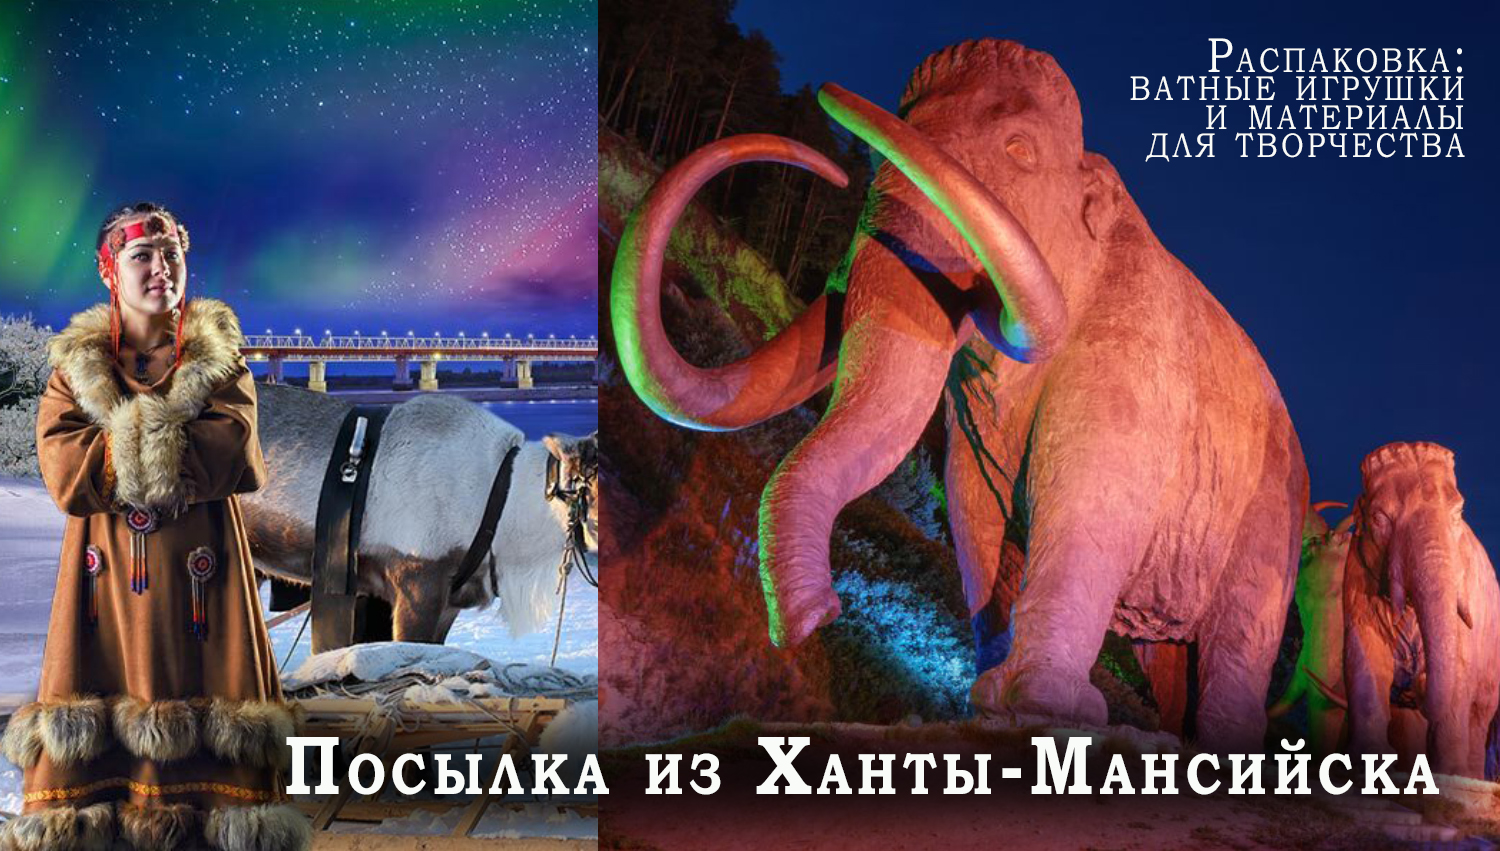 Посылка из Ханты-Мансийска/город мамонтов, северного сияния и ватных игрушек Татьяны Локтиной